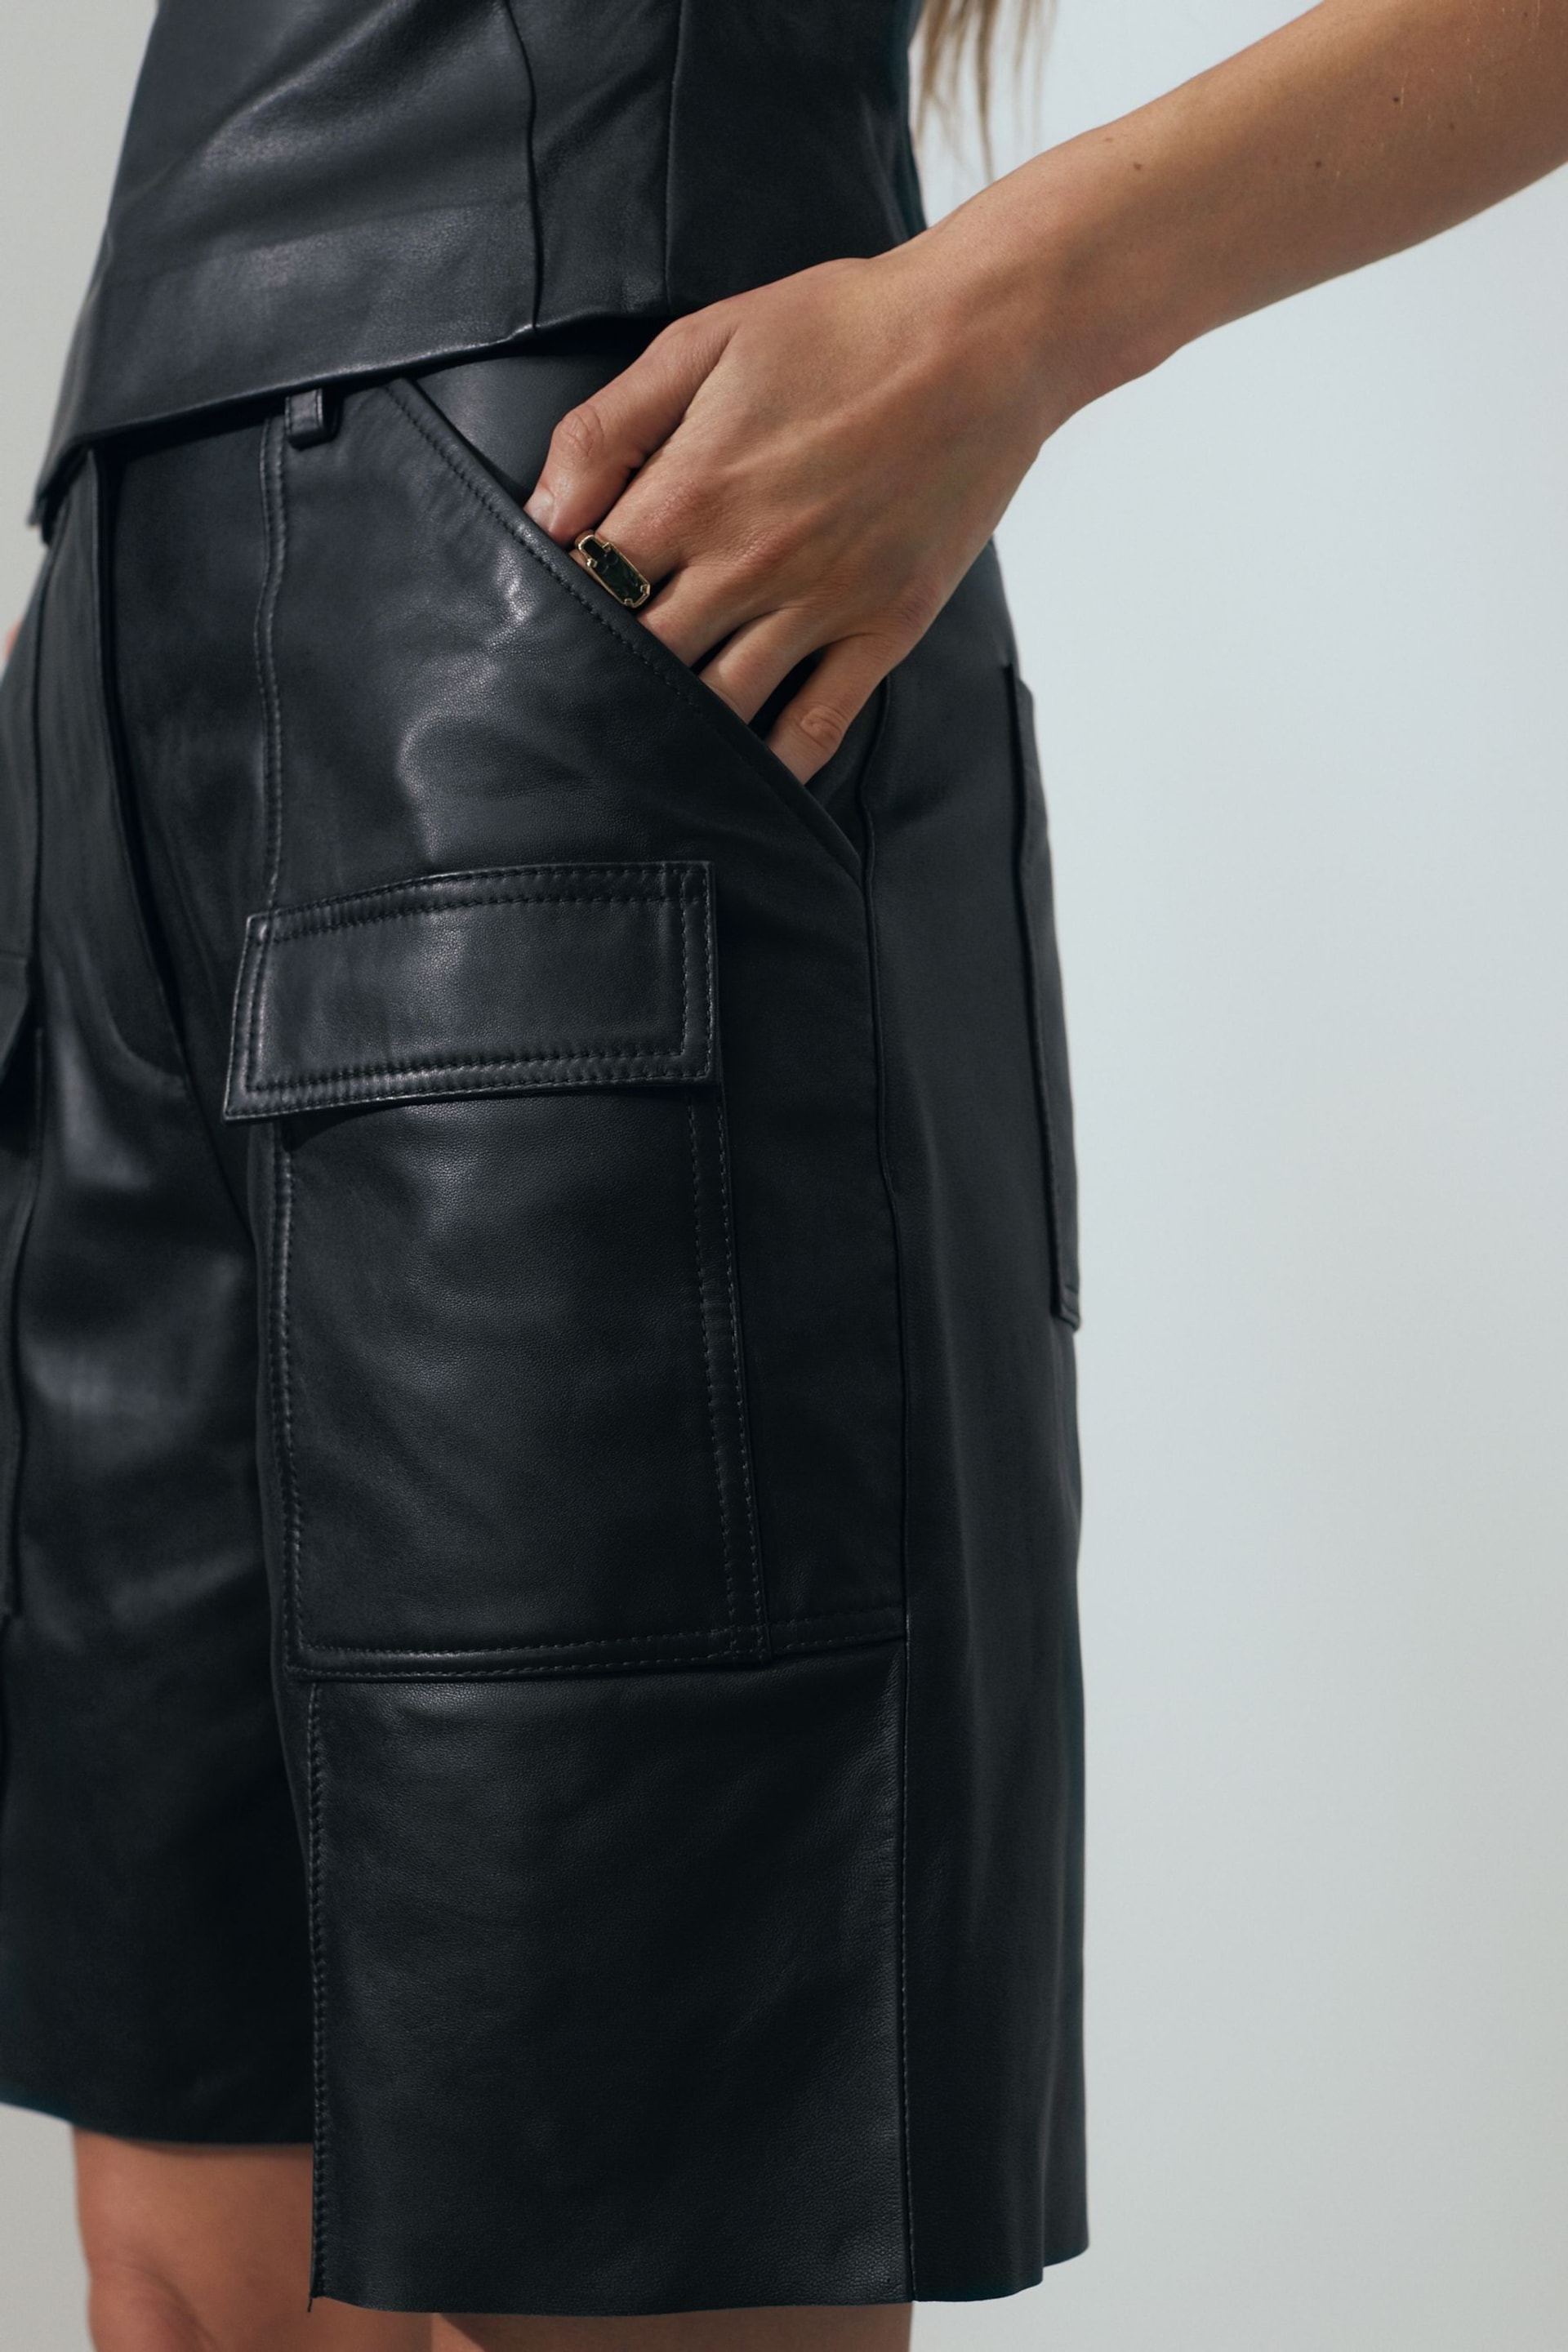 Atelier Leather Cargo Shorts - Image 3 of 7